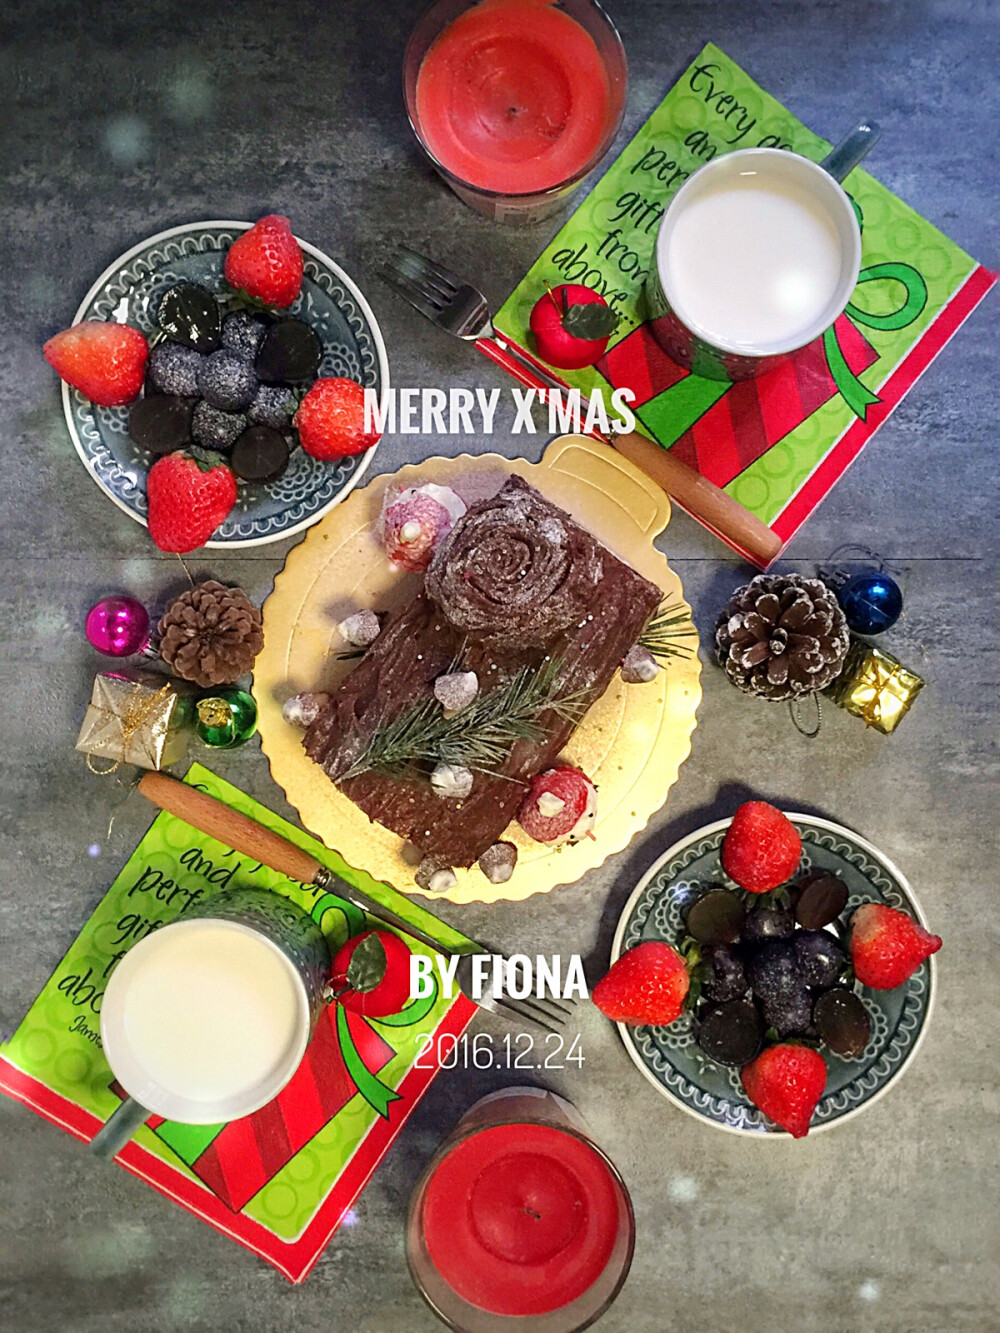 20161224Merry X'masssssssss☃☃☃ 平安夜的早餐来点奢的！和我的娜娜姐约了一起做圣诞树桩蛋糕，可可小四卷和巧克力甘纳许的组合简直完美～草莓圣诞老人胖嘟嘟傻乎乎被我一口吞掉了哎哟～切了水果 点上樱桃莓果味的蜡烛 饮品是牛奶～整个早晨红彤彤的！